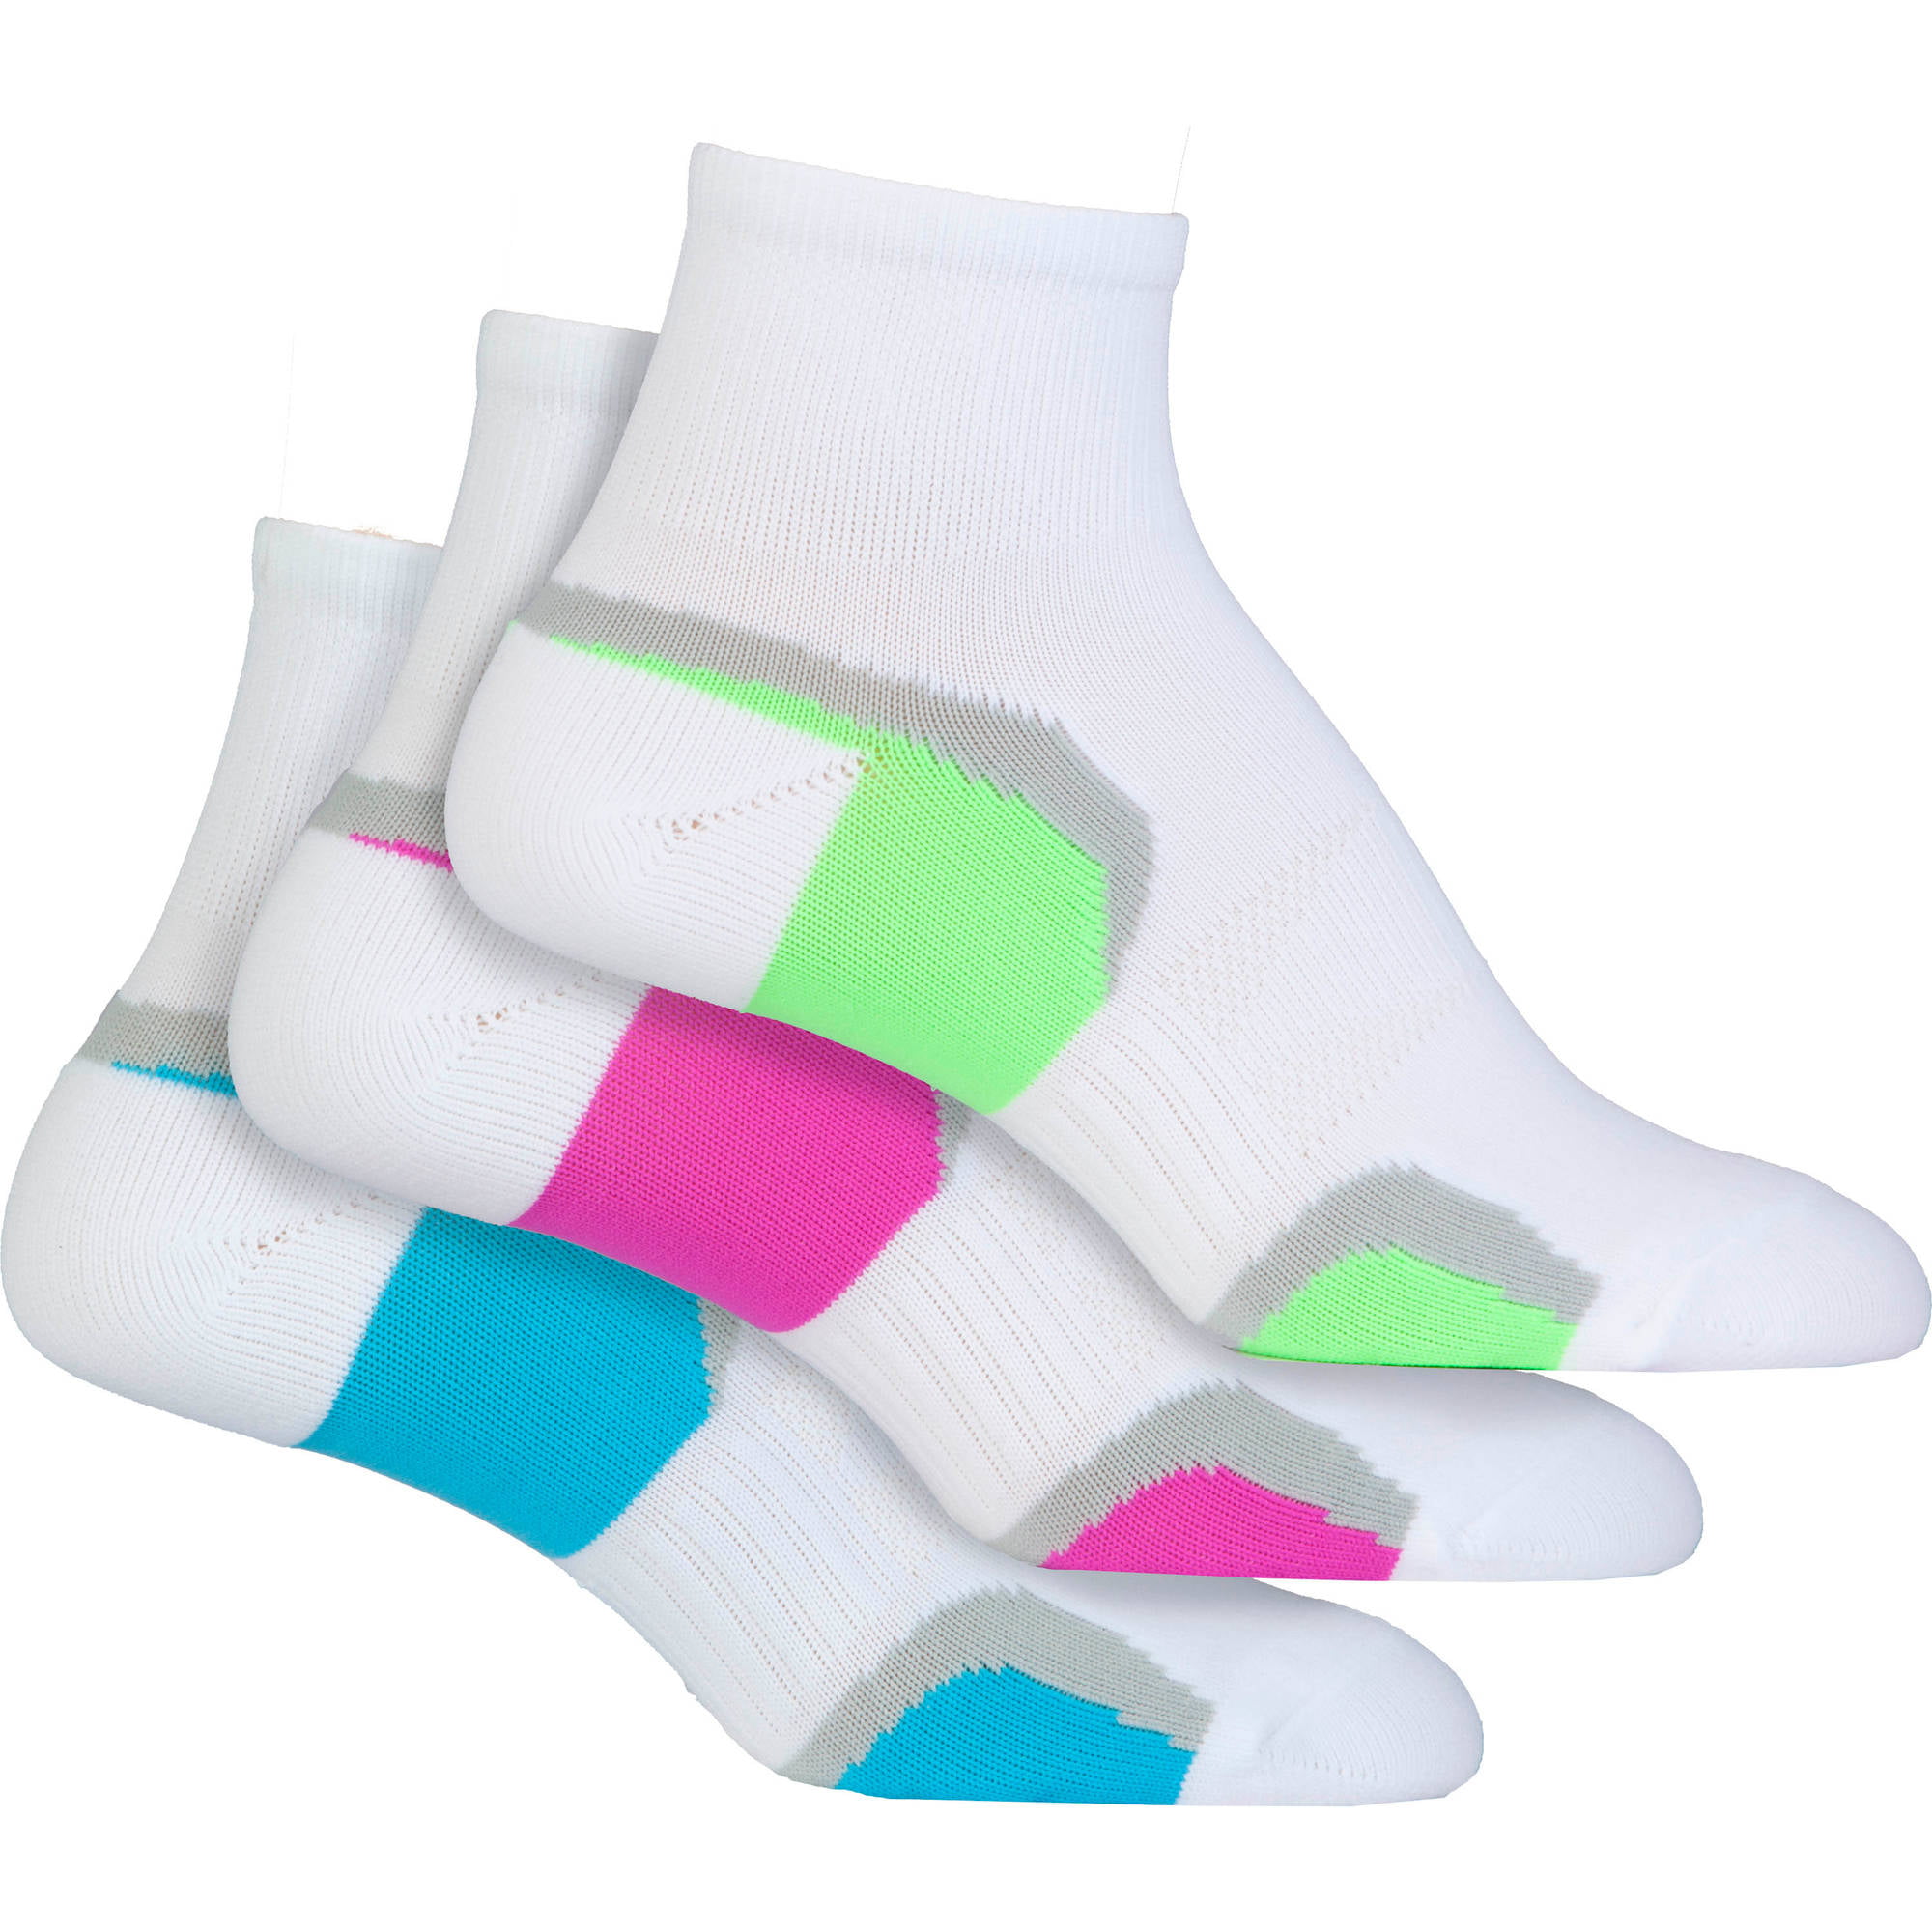 Danskin - Mid-Cushion Compression Ankle Socks, Pack of 3 - Walmart.com ...